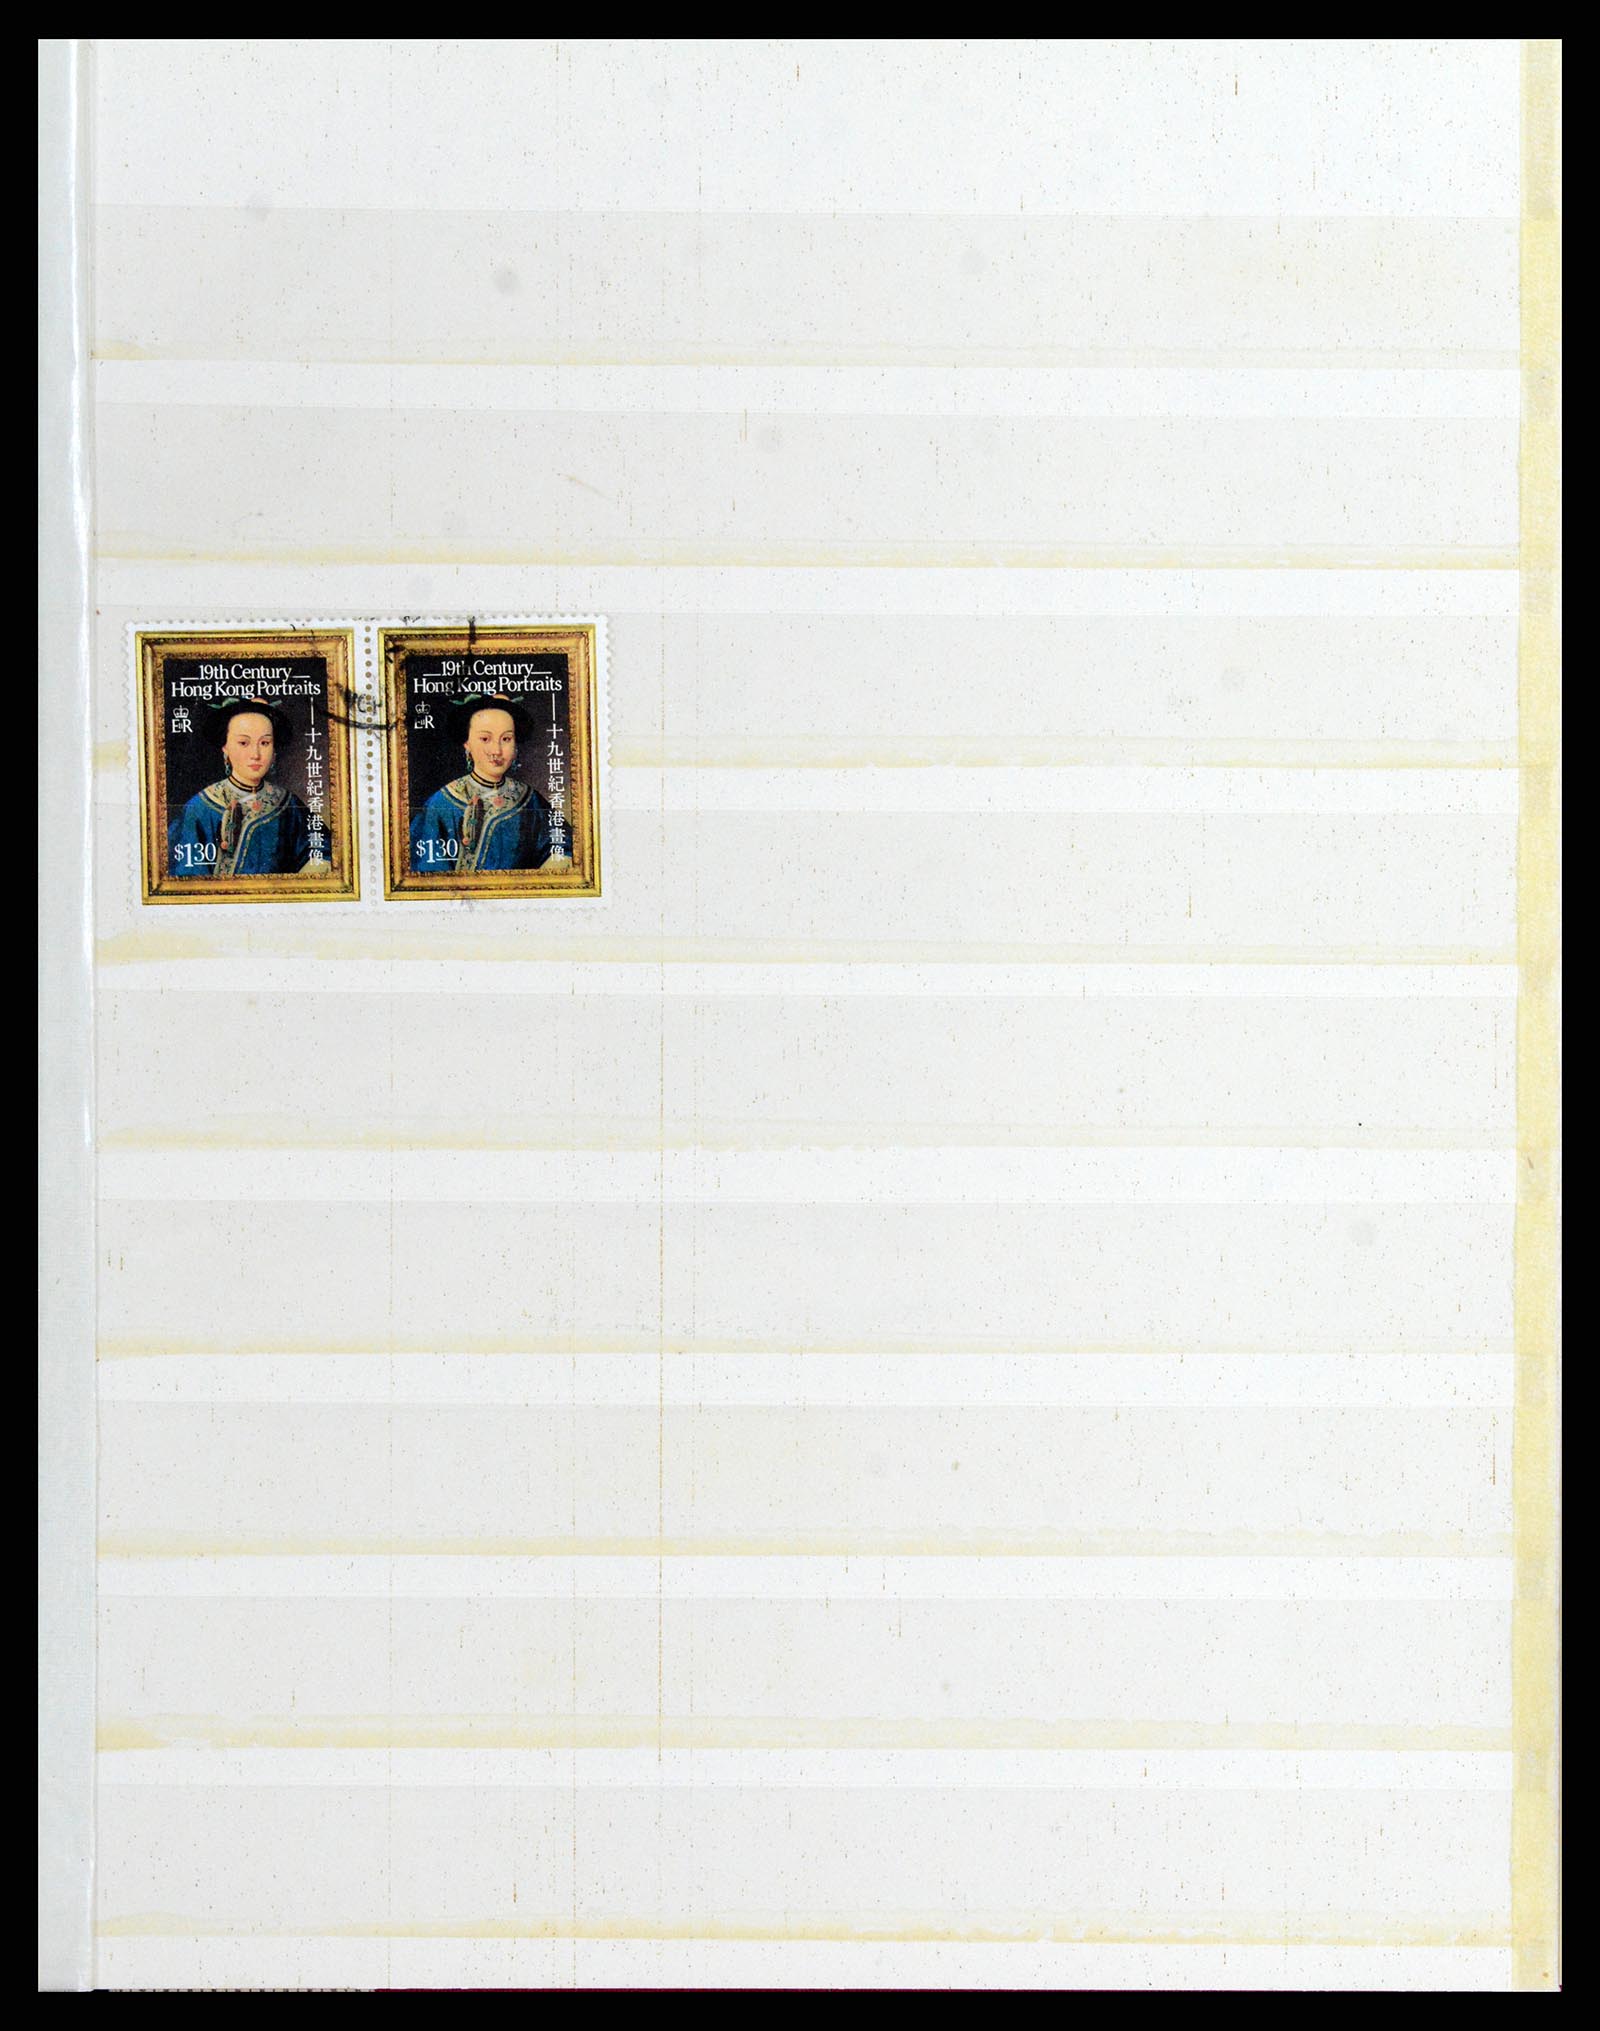 37358 033 - Stamp collection 37358 Hong Kong 1861-1997.